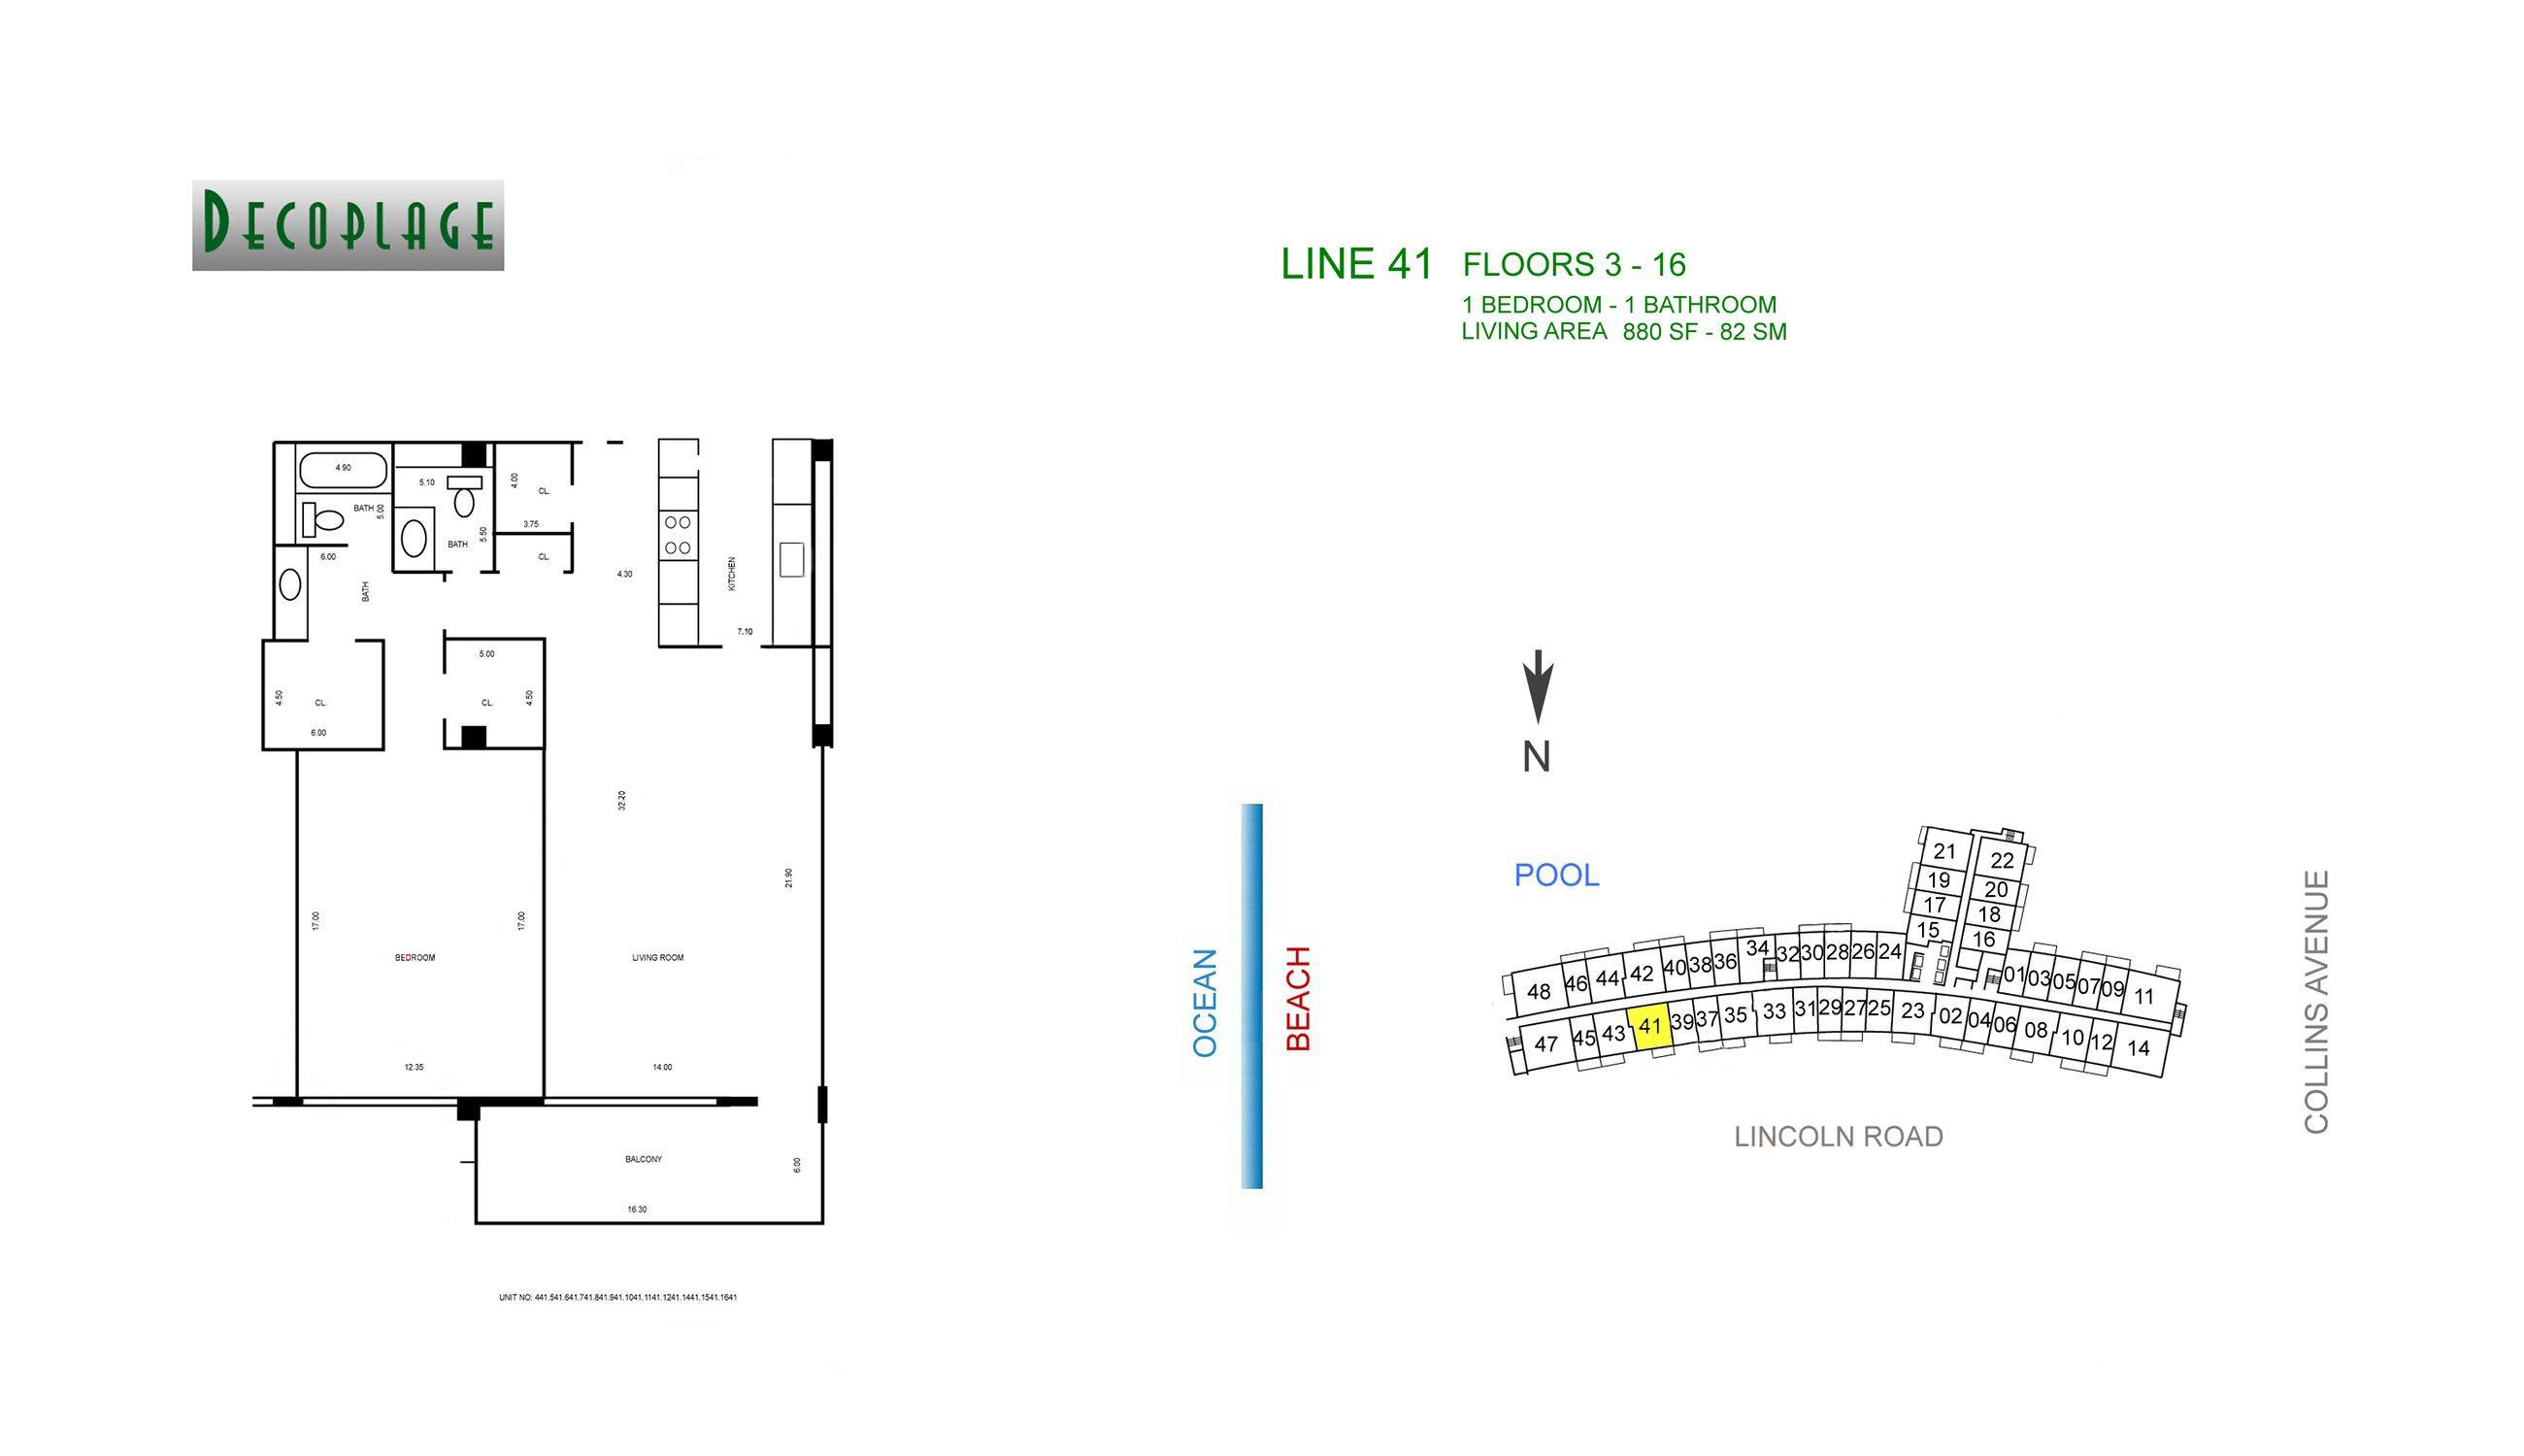 Decoplage Lines 41 Floors 3-16